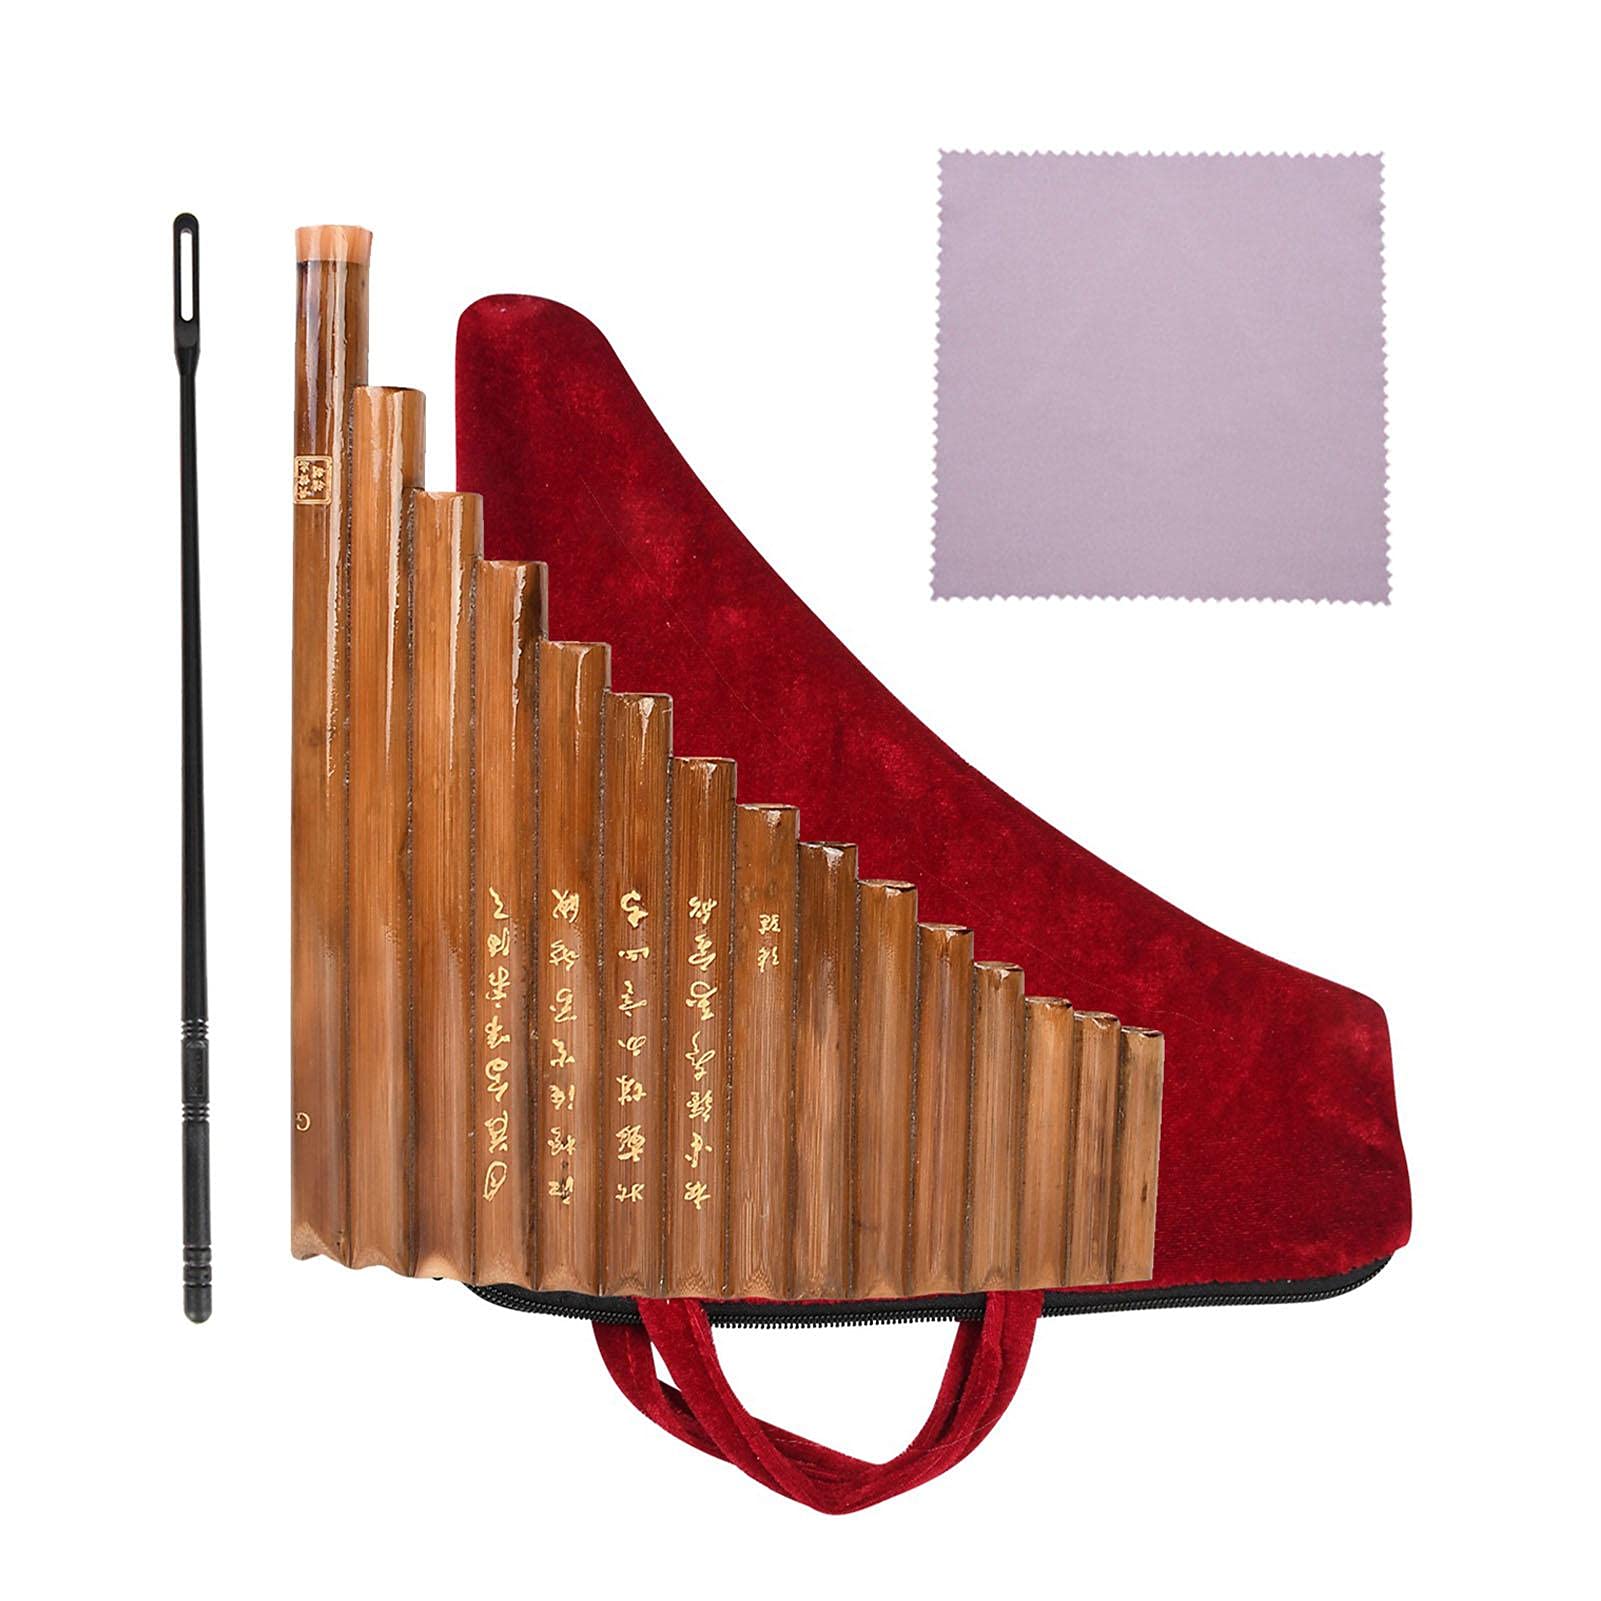 15 Pfeifen G Key Panflöte - Traditionelles chinesisches Musikinstrument mit Reinigungsstab und Tuch, linke Hand, braun - reiner, weicher und zarter Klang